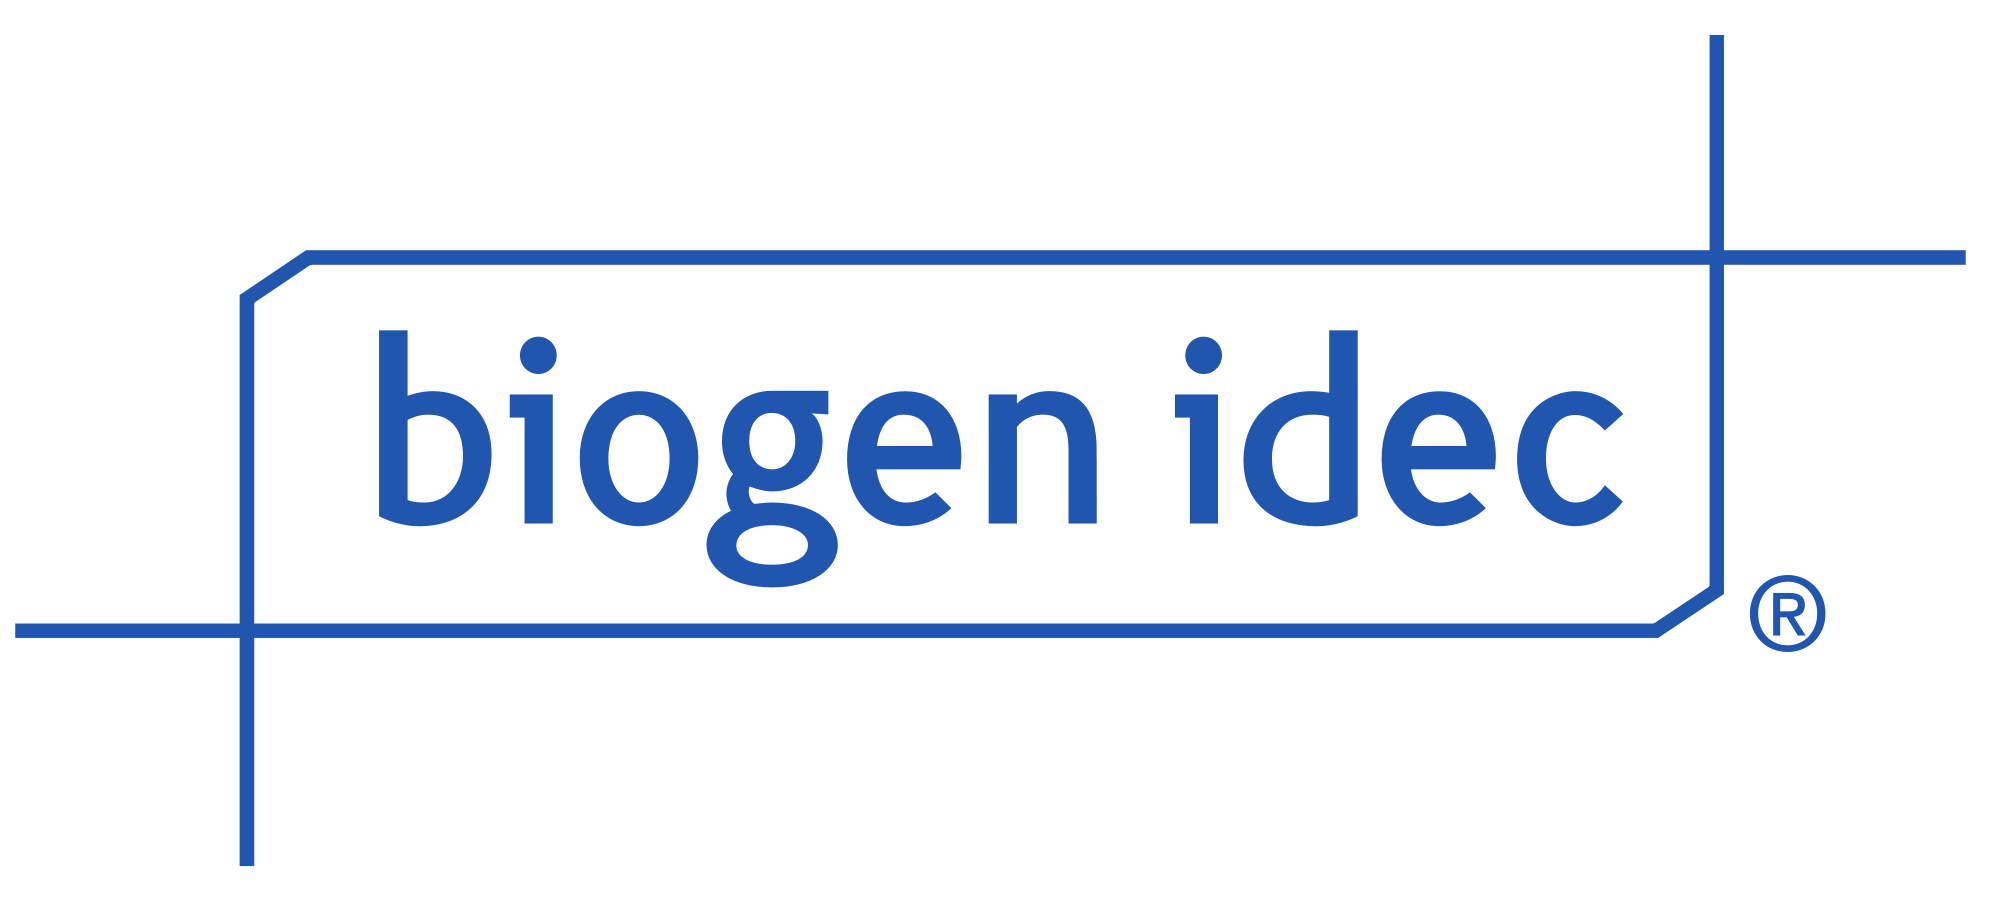 New Biogen Idec Logo - Biogen Idec logo.svg